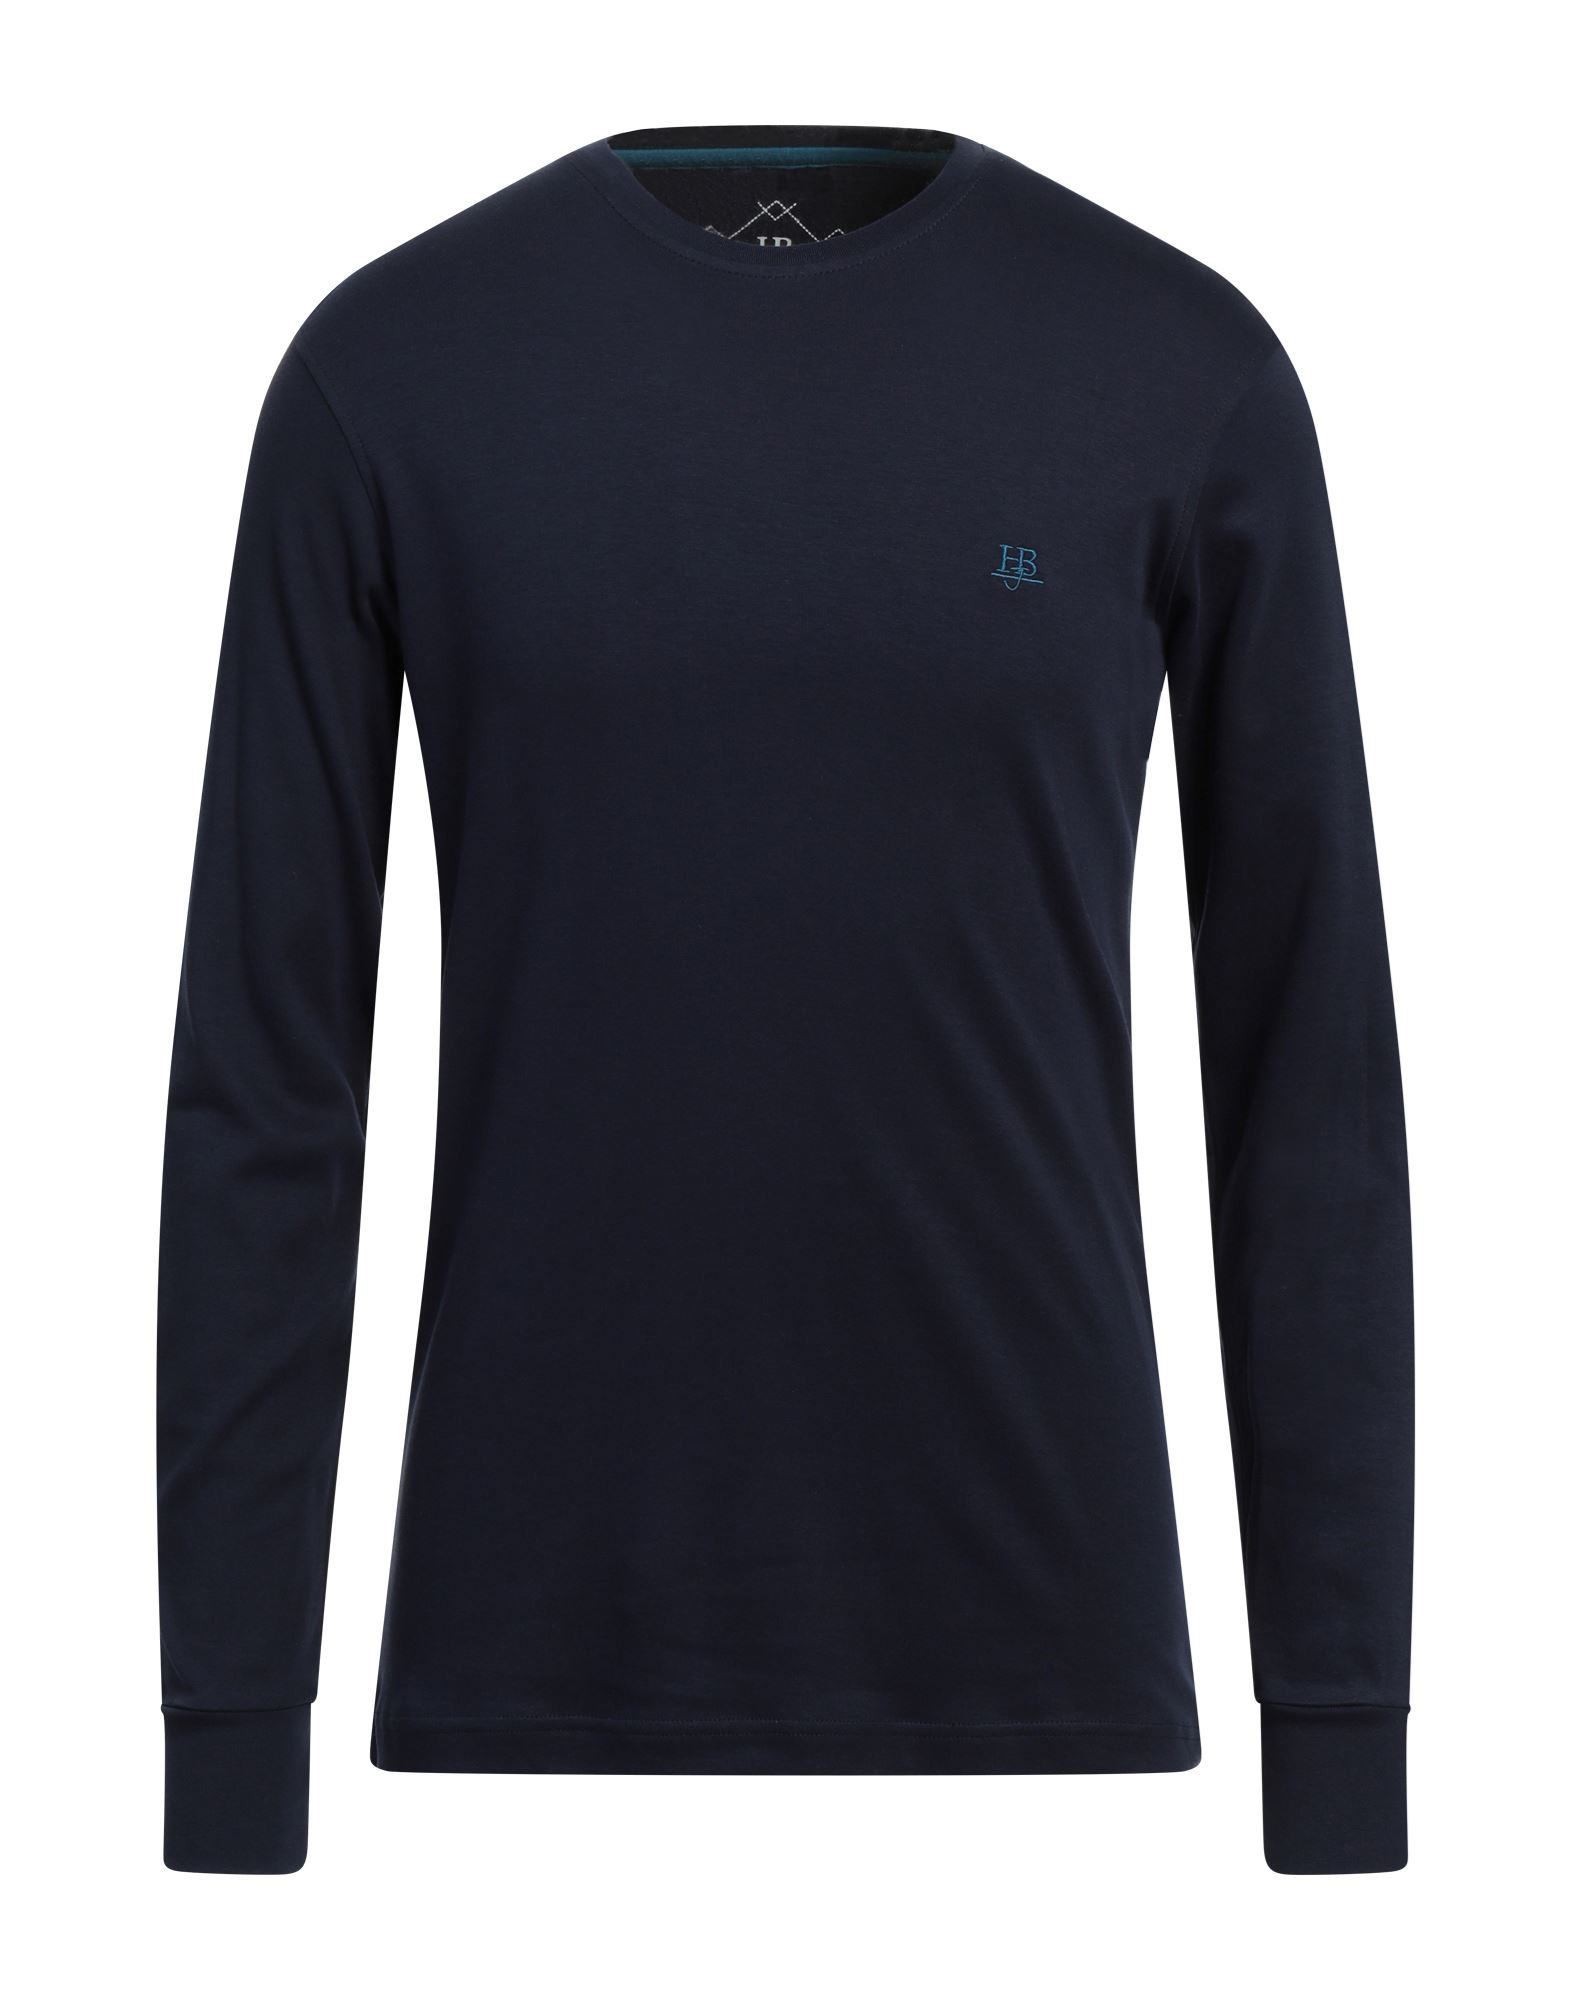 HARMONT & BLAINE T-shirts Herren Nachtblau von HARMONT & BLAINE